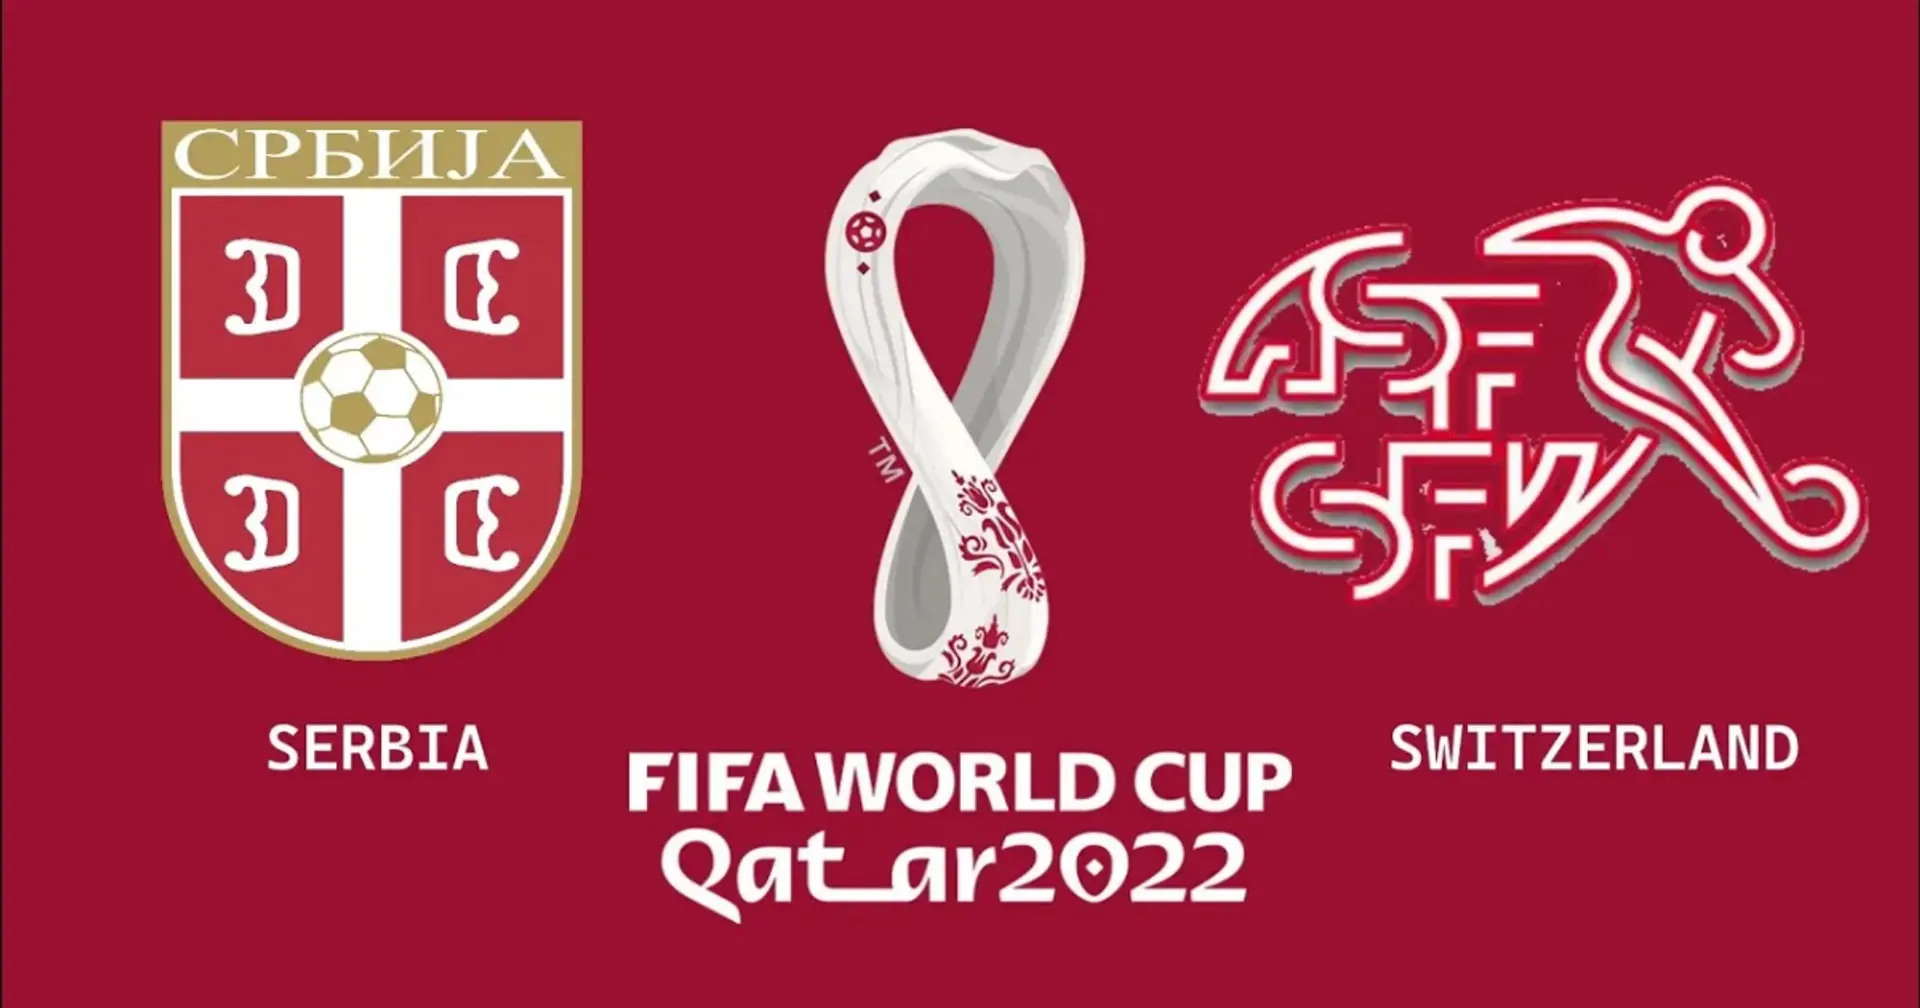 Serbia vs Suiza: se revelan las alineaciones oficiales de los equipos para el choque de la Copa del Mundo